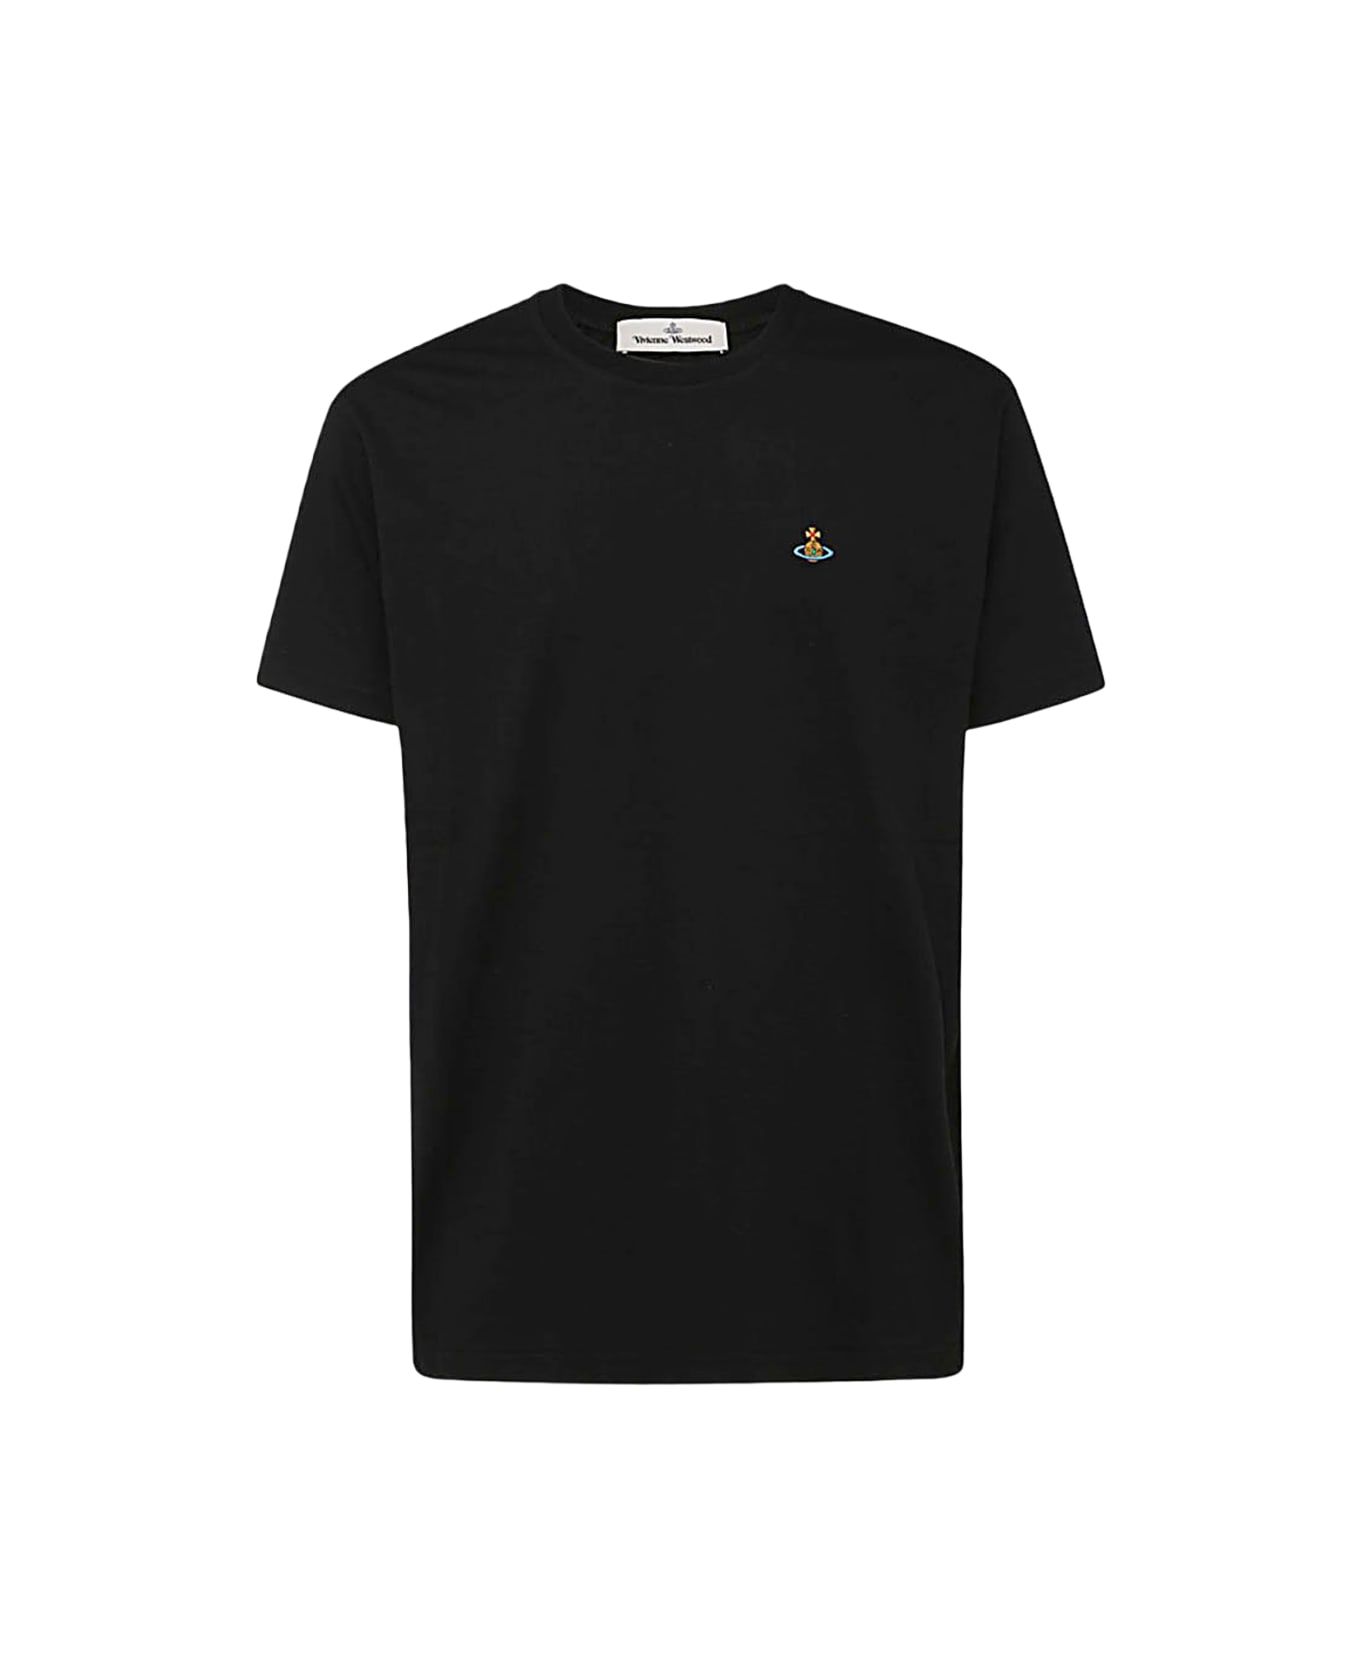 Vivienne Westwood Black Cotton T-shirt - Black Tシャツ